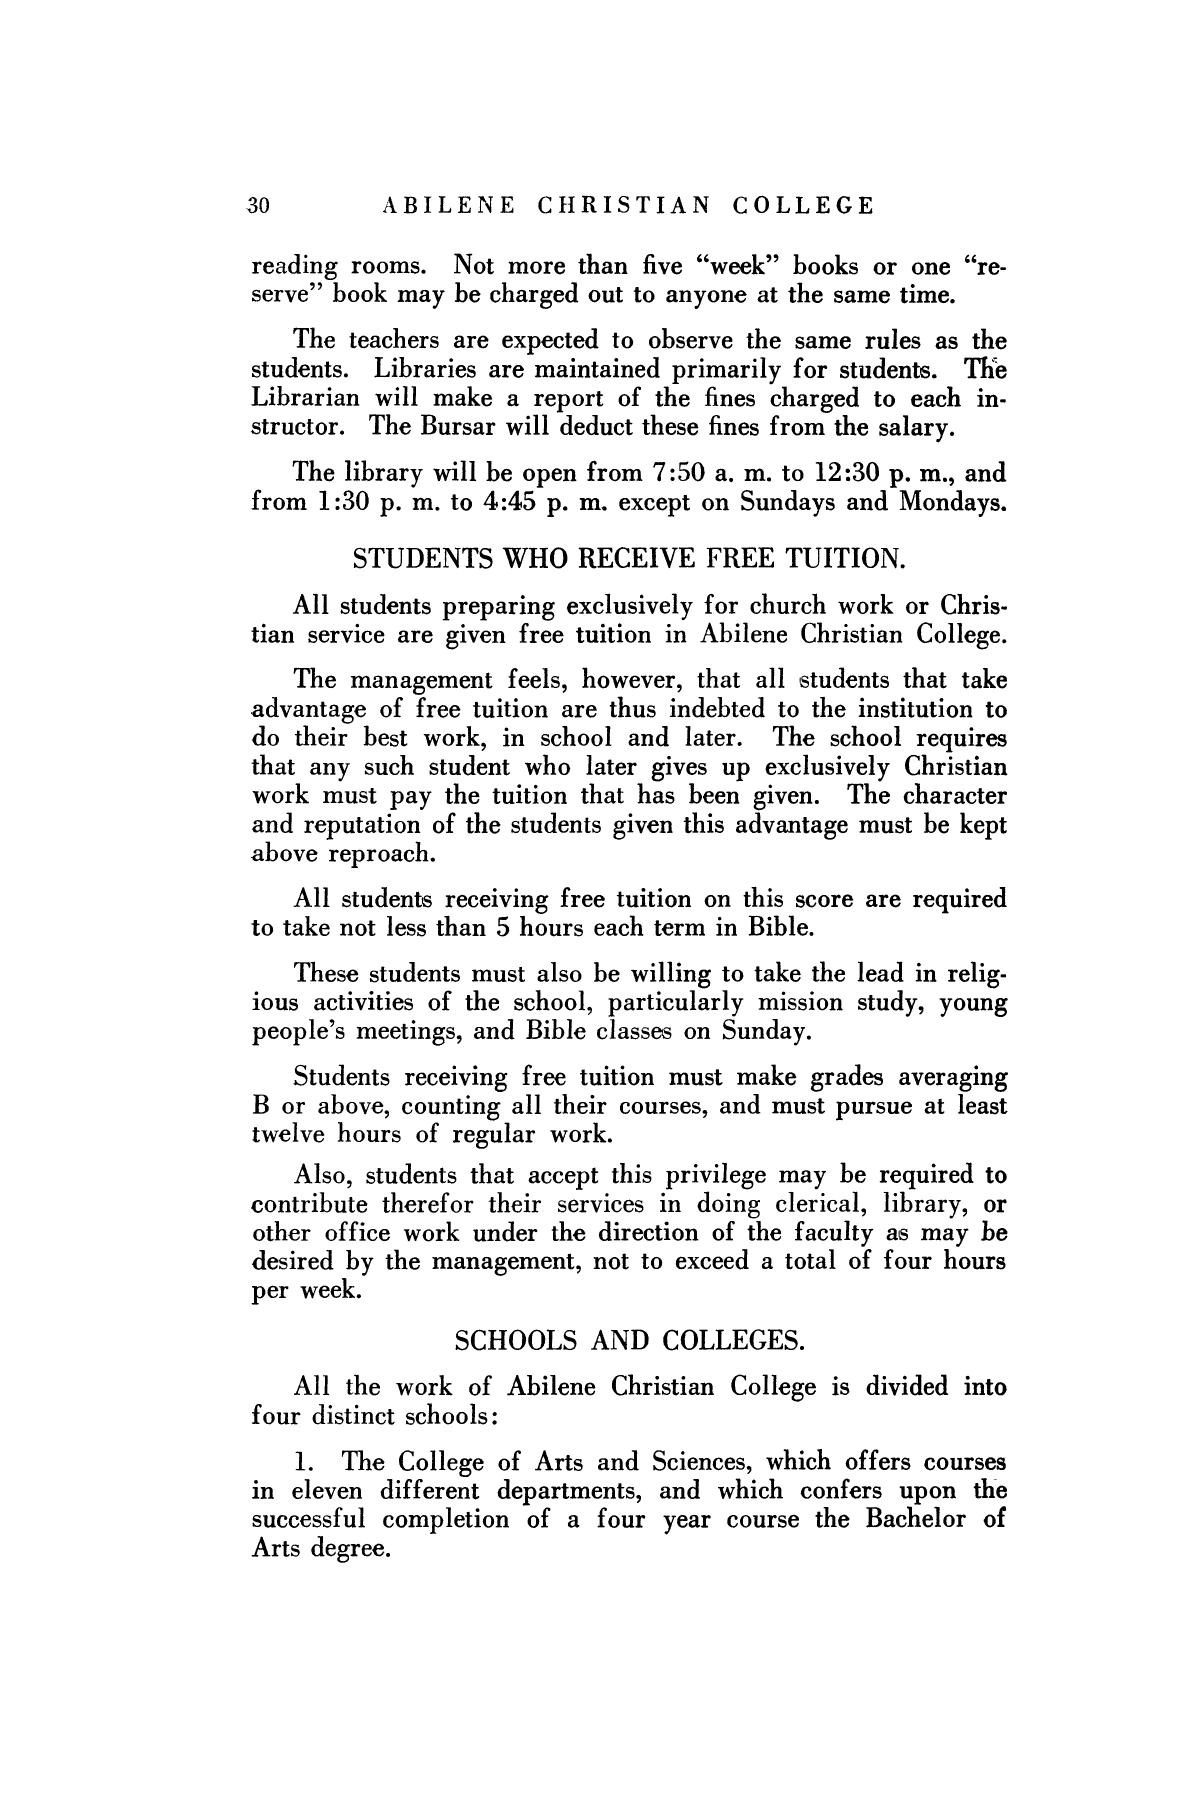 Catalog of Abilene Christian College, 1925-1926
                                                
                                                    30
                                                